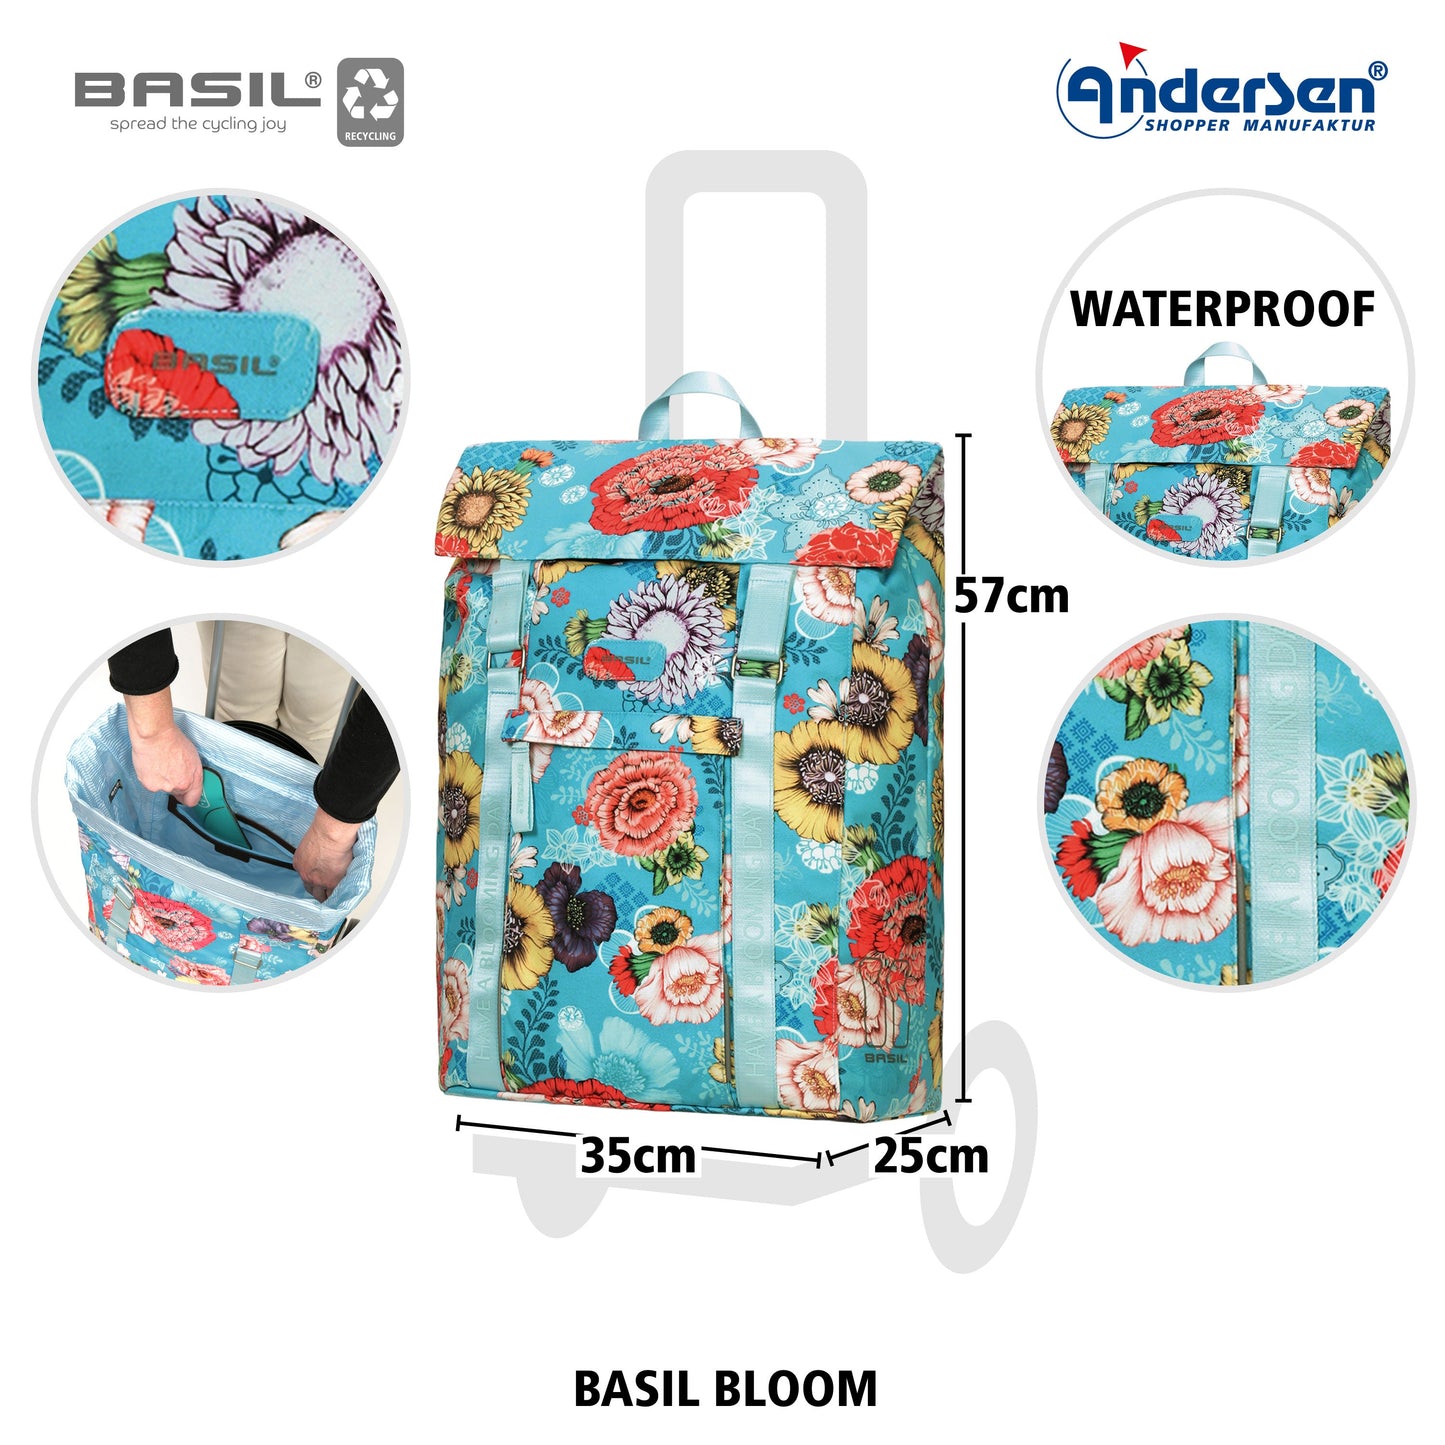 Andersen Shopper Manufaktur-Unus Shopper Fun Basil Bloom blau-www.shopping-trolley.ch-bild4